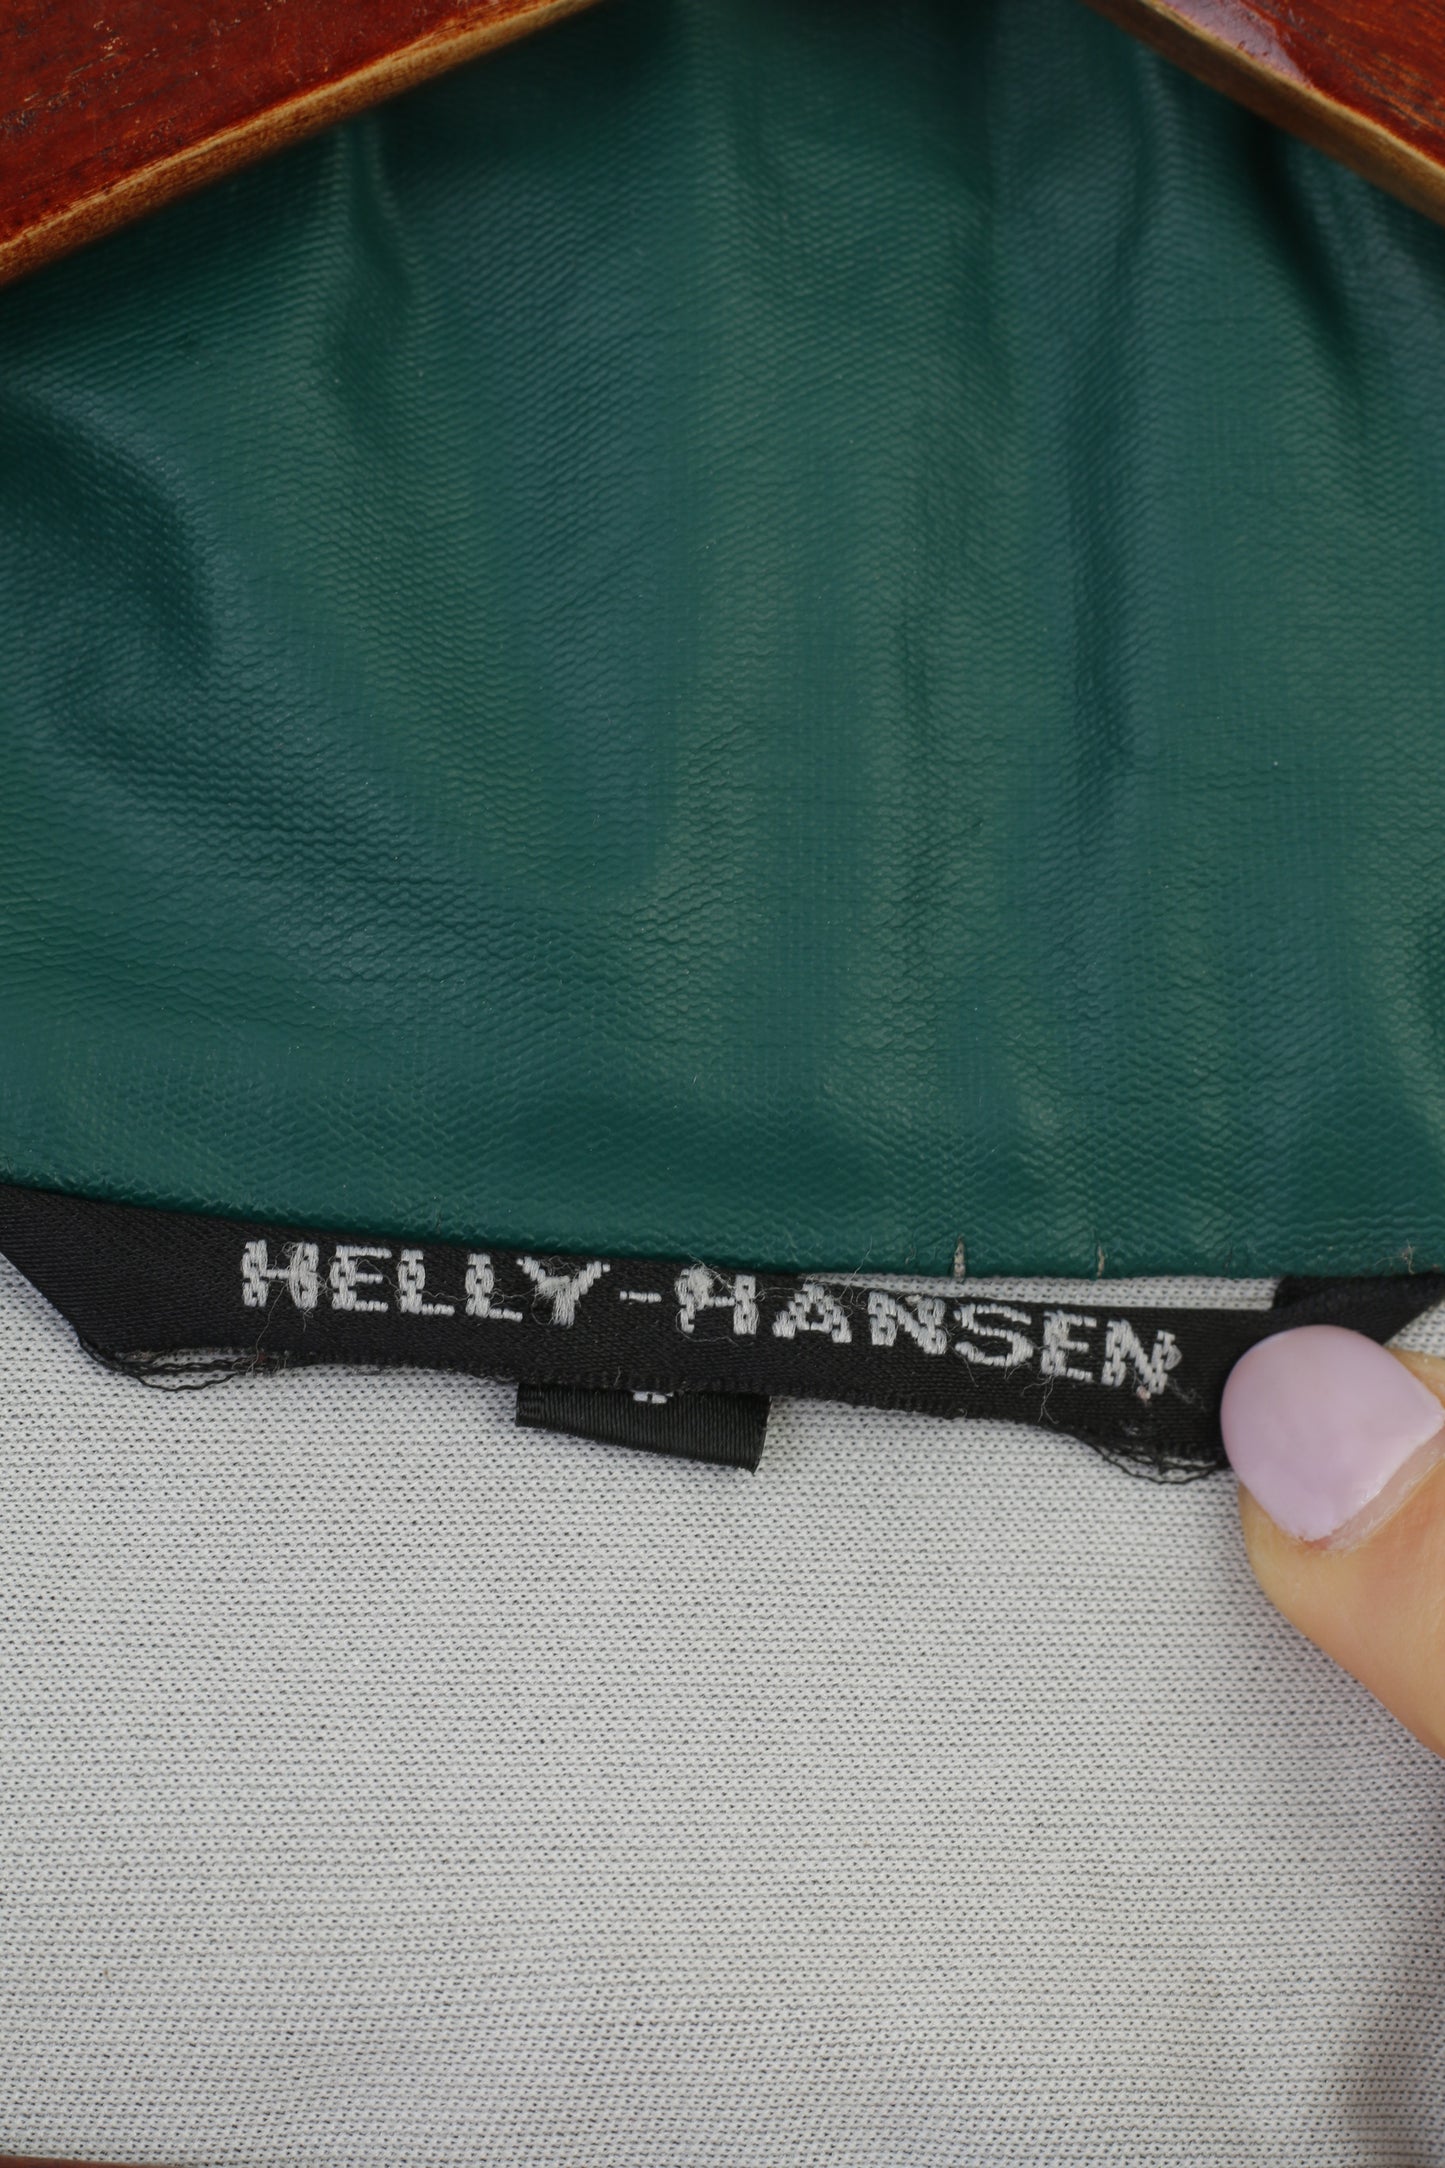 Helly Hansen Veste Homme Marine Vintage Brillant Polyuréthane Fermeture Éclair Complète Haut Imperméable Extérieur